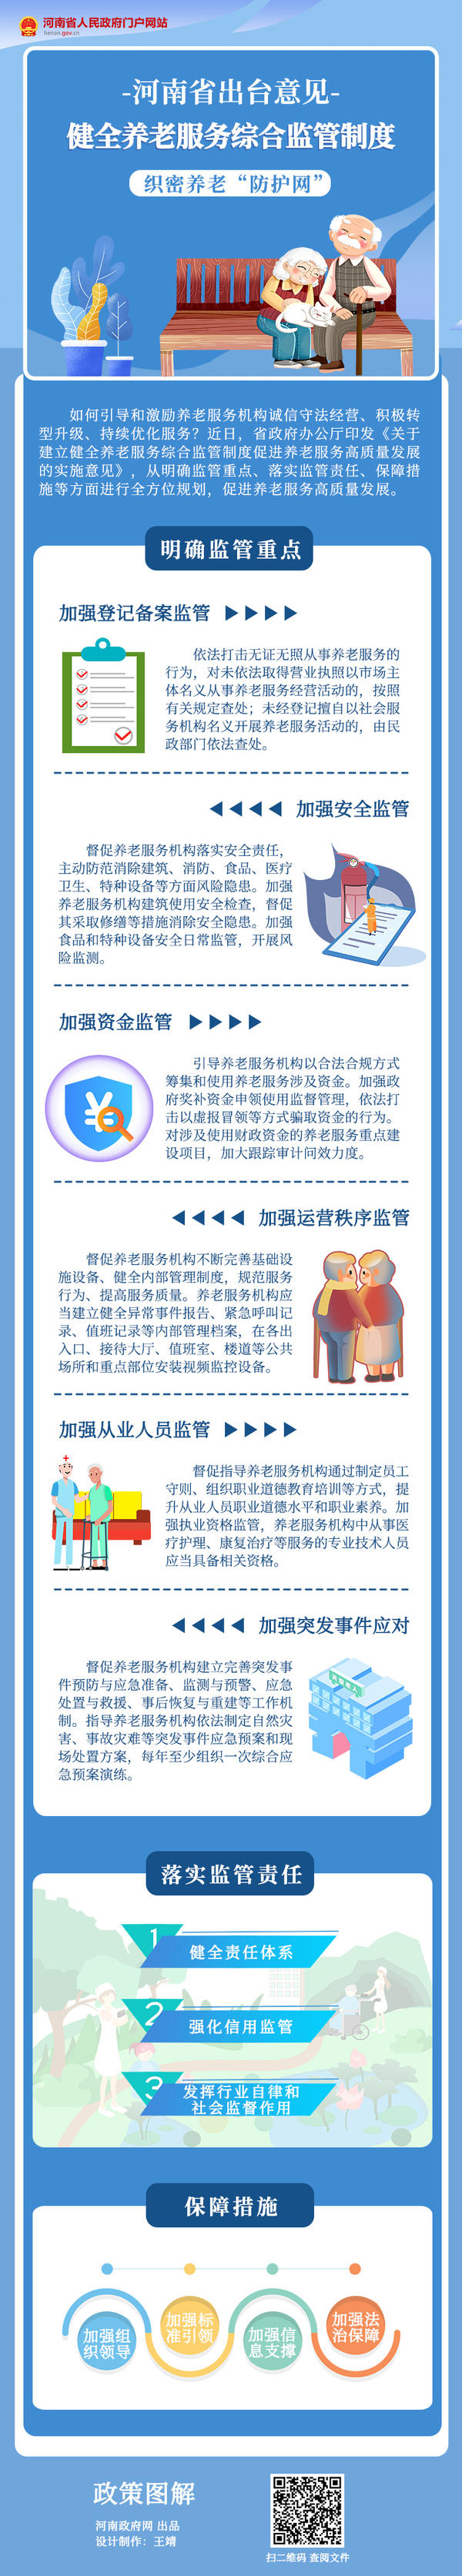 河南省出台意见 健全养老服务综合监管制度